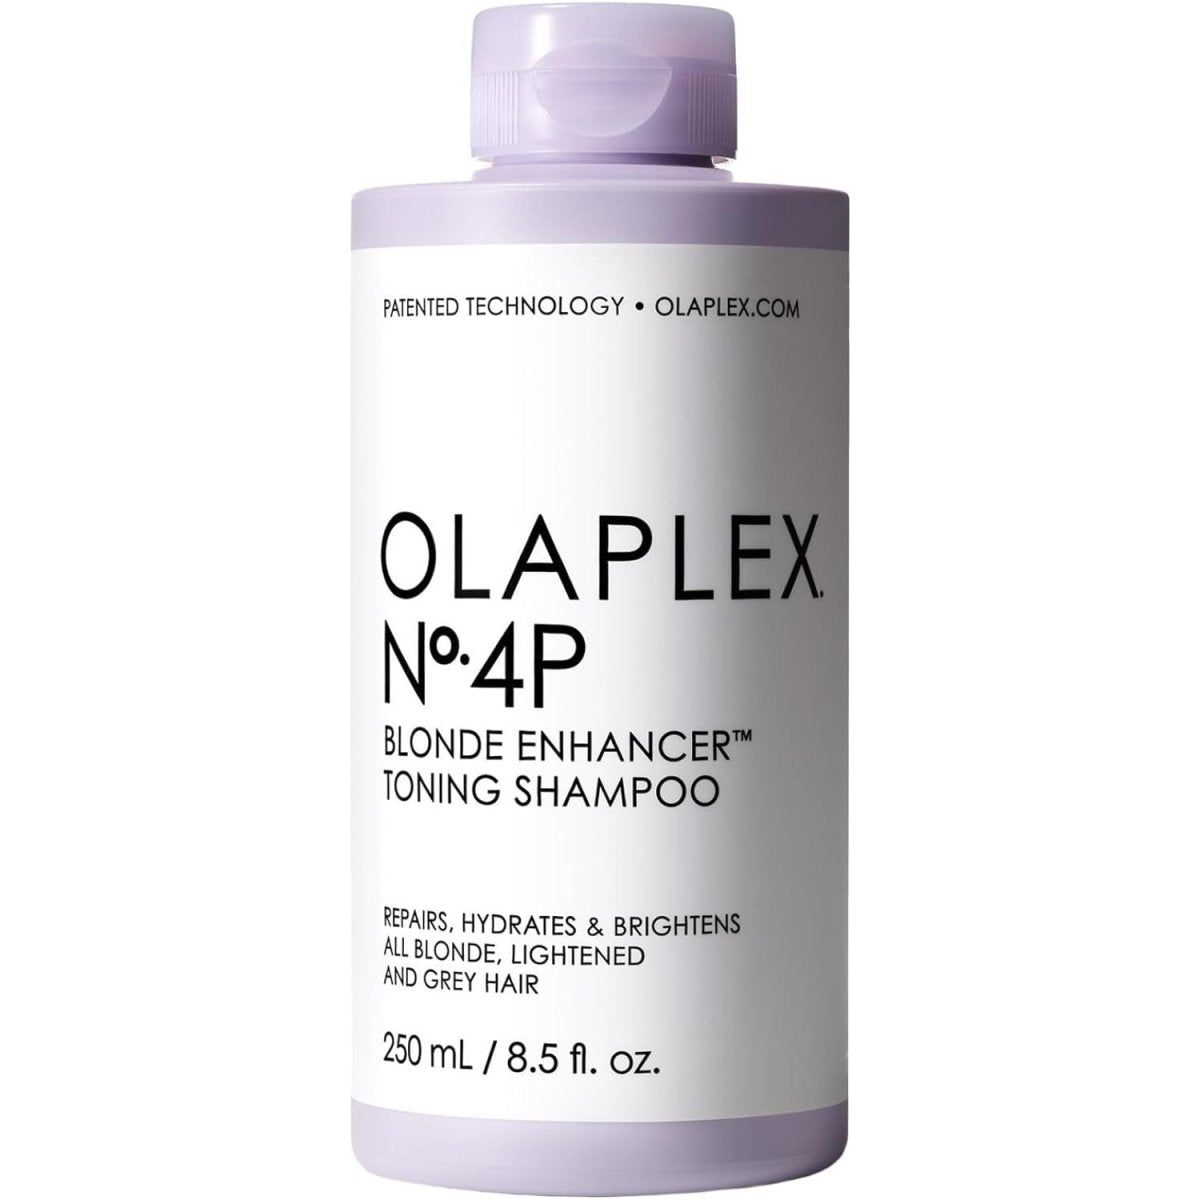 Olaplex No.4P Blonde Enhancer Toning Shampoo 250ml - Glam Global UK